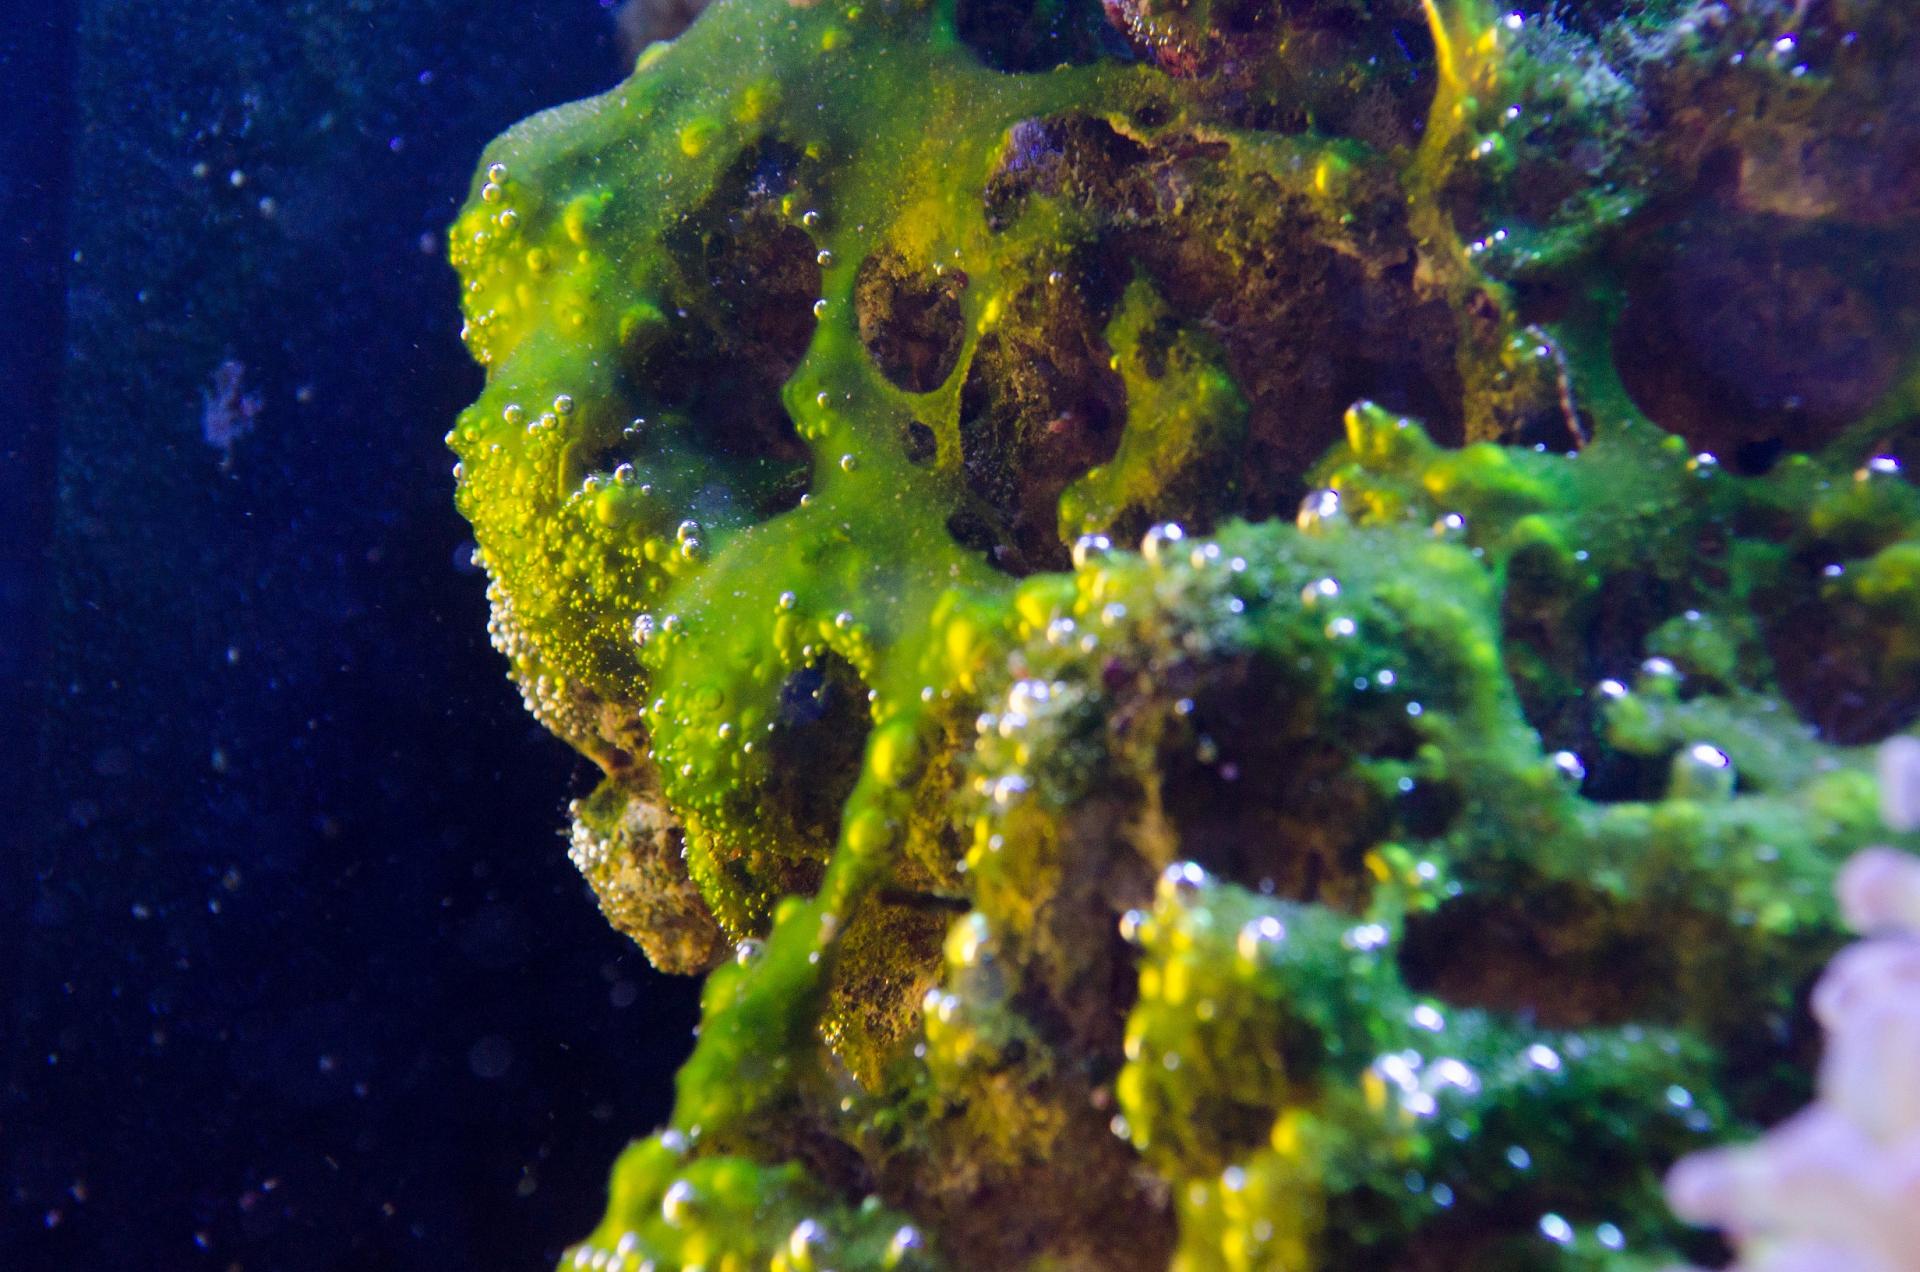 Сине зеленые водоросли в аквариуме фото